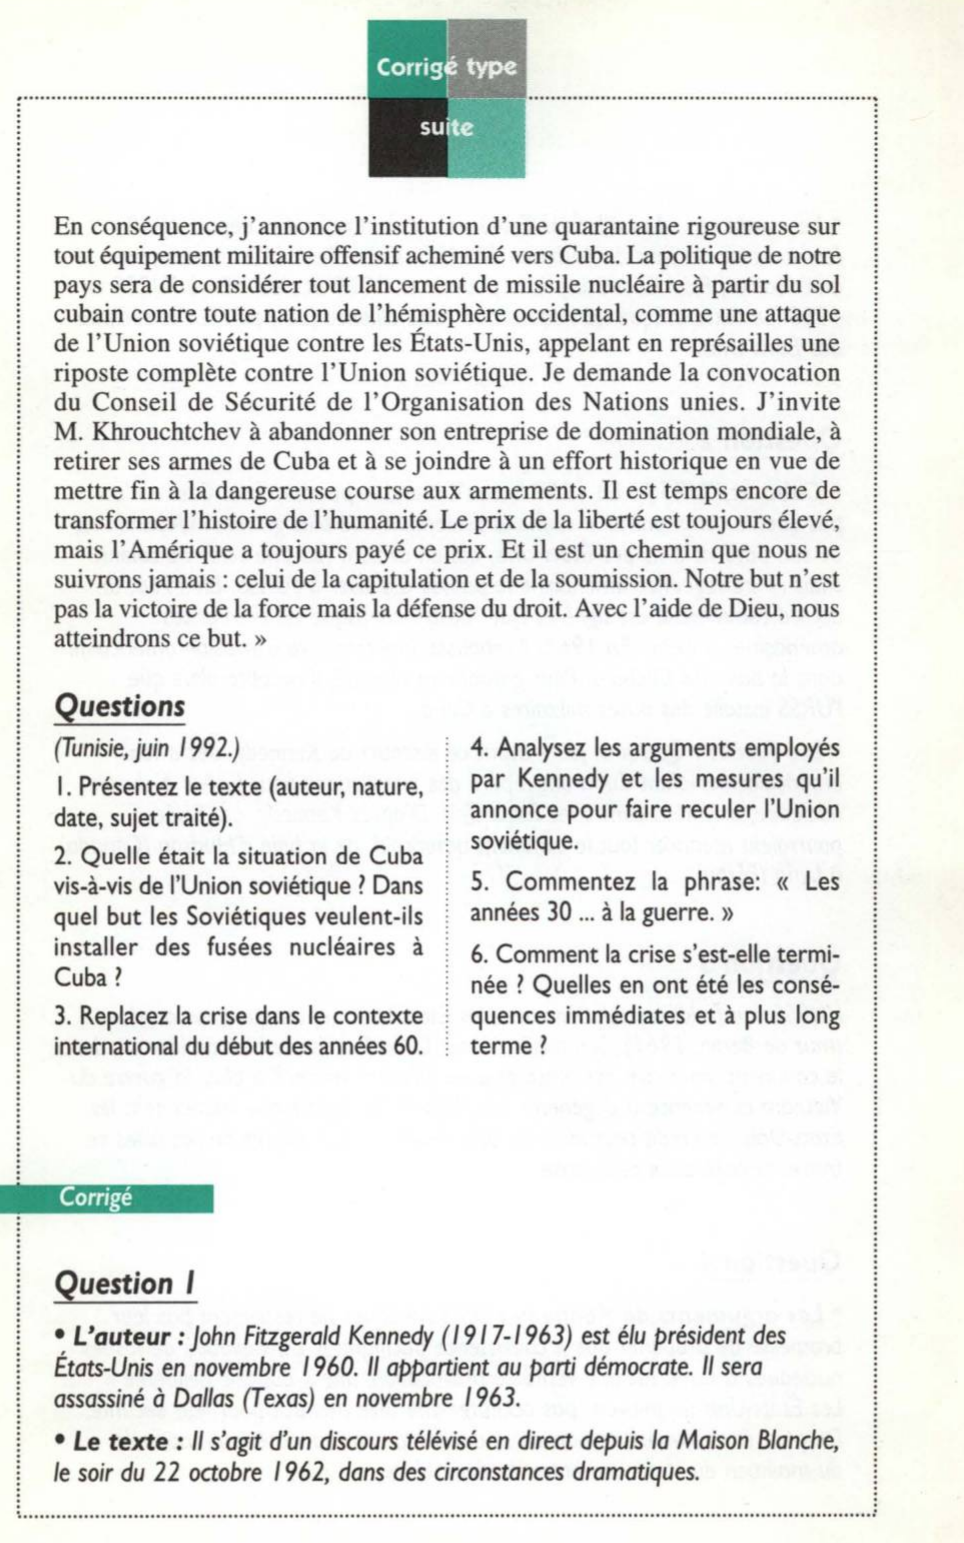 Prévisualisation du document La crise de Cuba, discours télévisé du président Kennedy le 22 octobre 1962. Histoire.